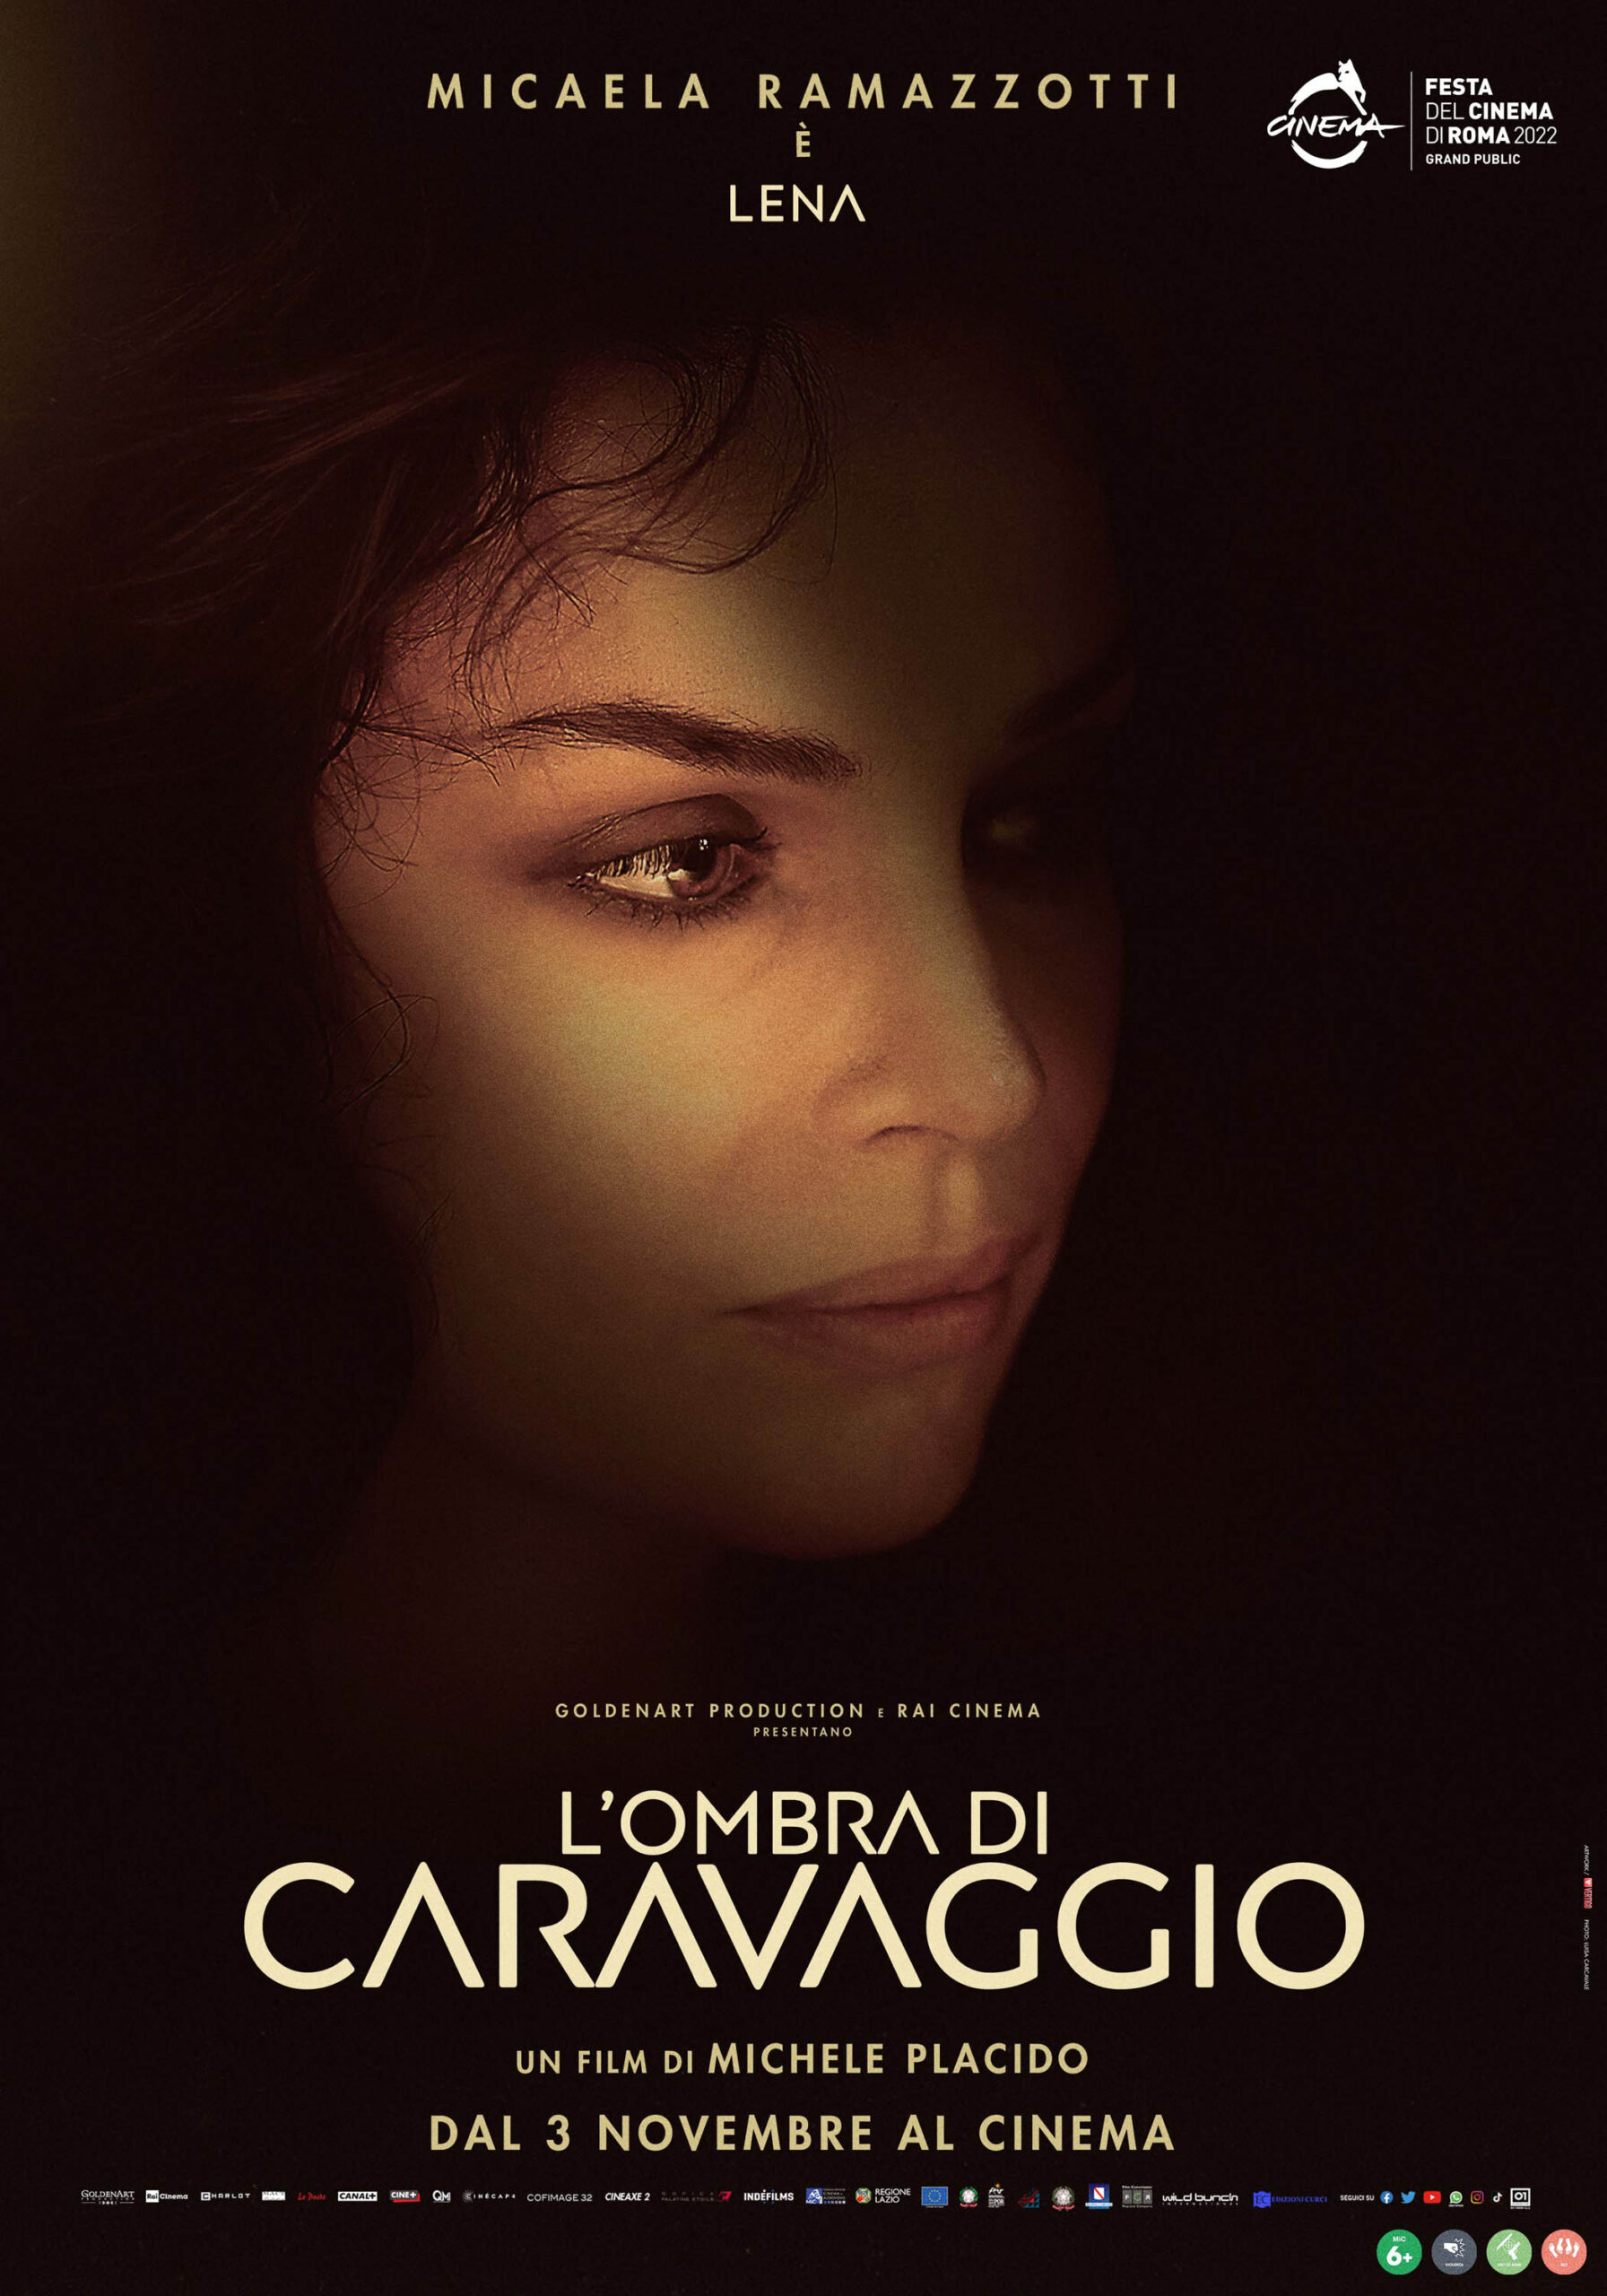 L'ombra di Caravaggio - Poster Micaela Ramazzotti